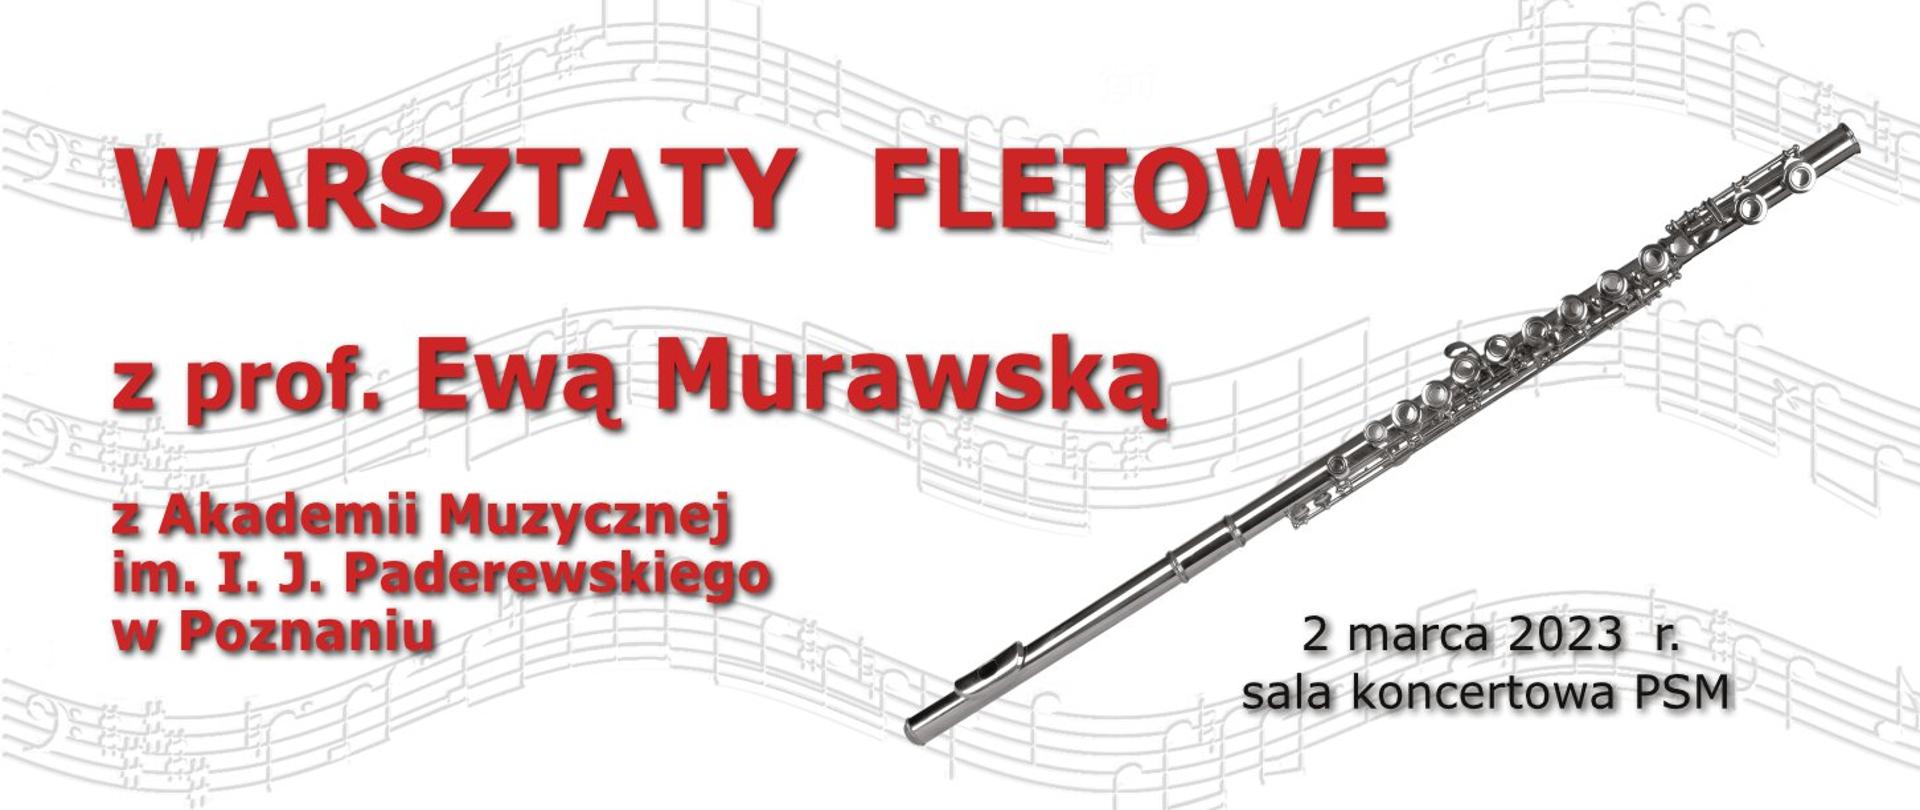 Plakat z informacją o warsztatach fletowych z prof. E. Murawską. Na tle wijącego się tekstu nutowego tekst w kolorze cegły, po prawej zdjęcie fletu i data.